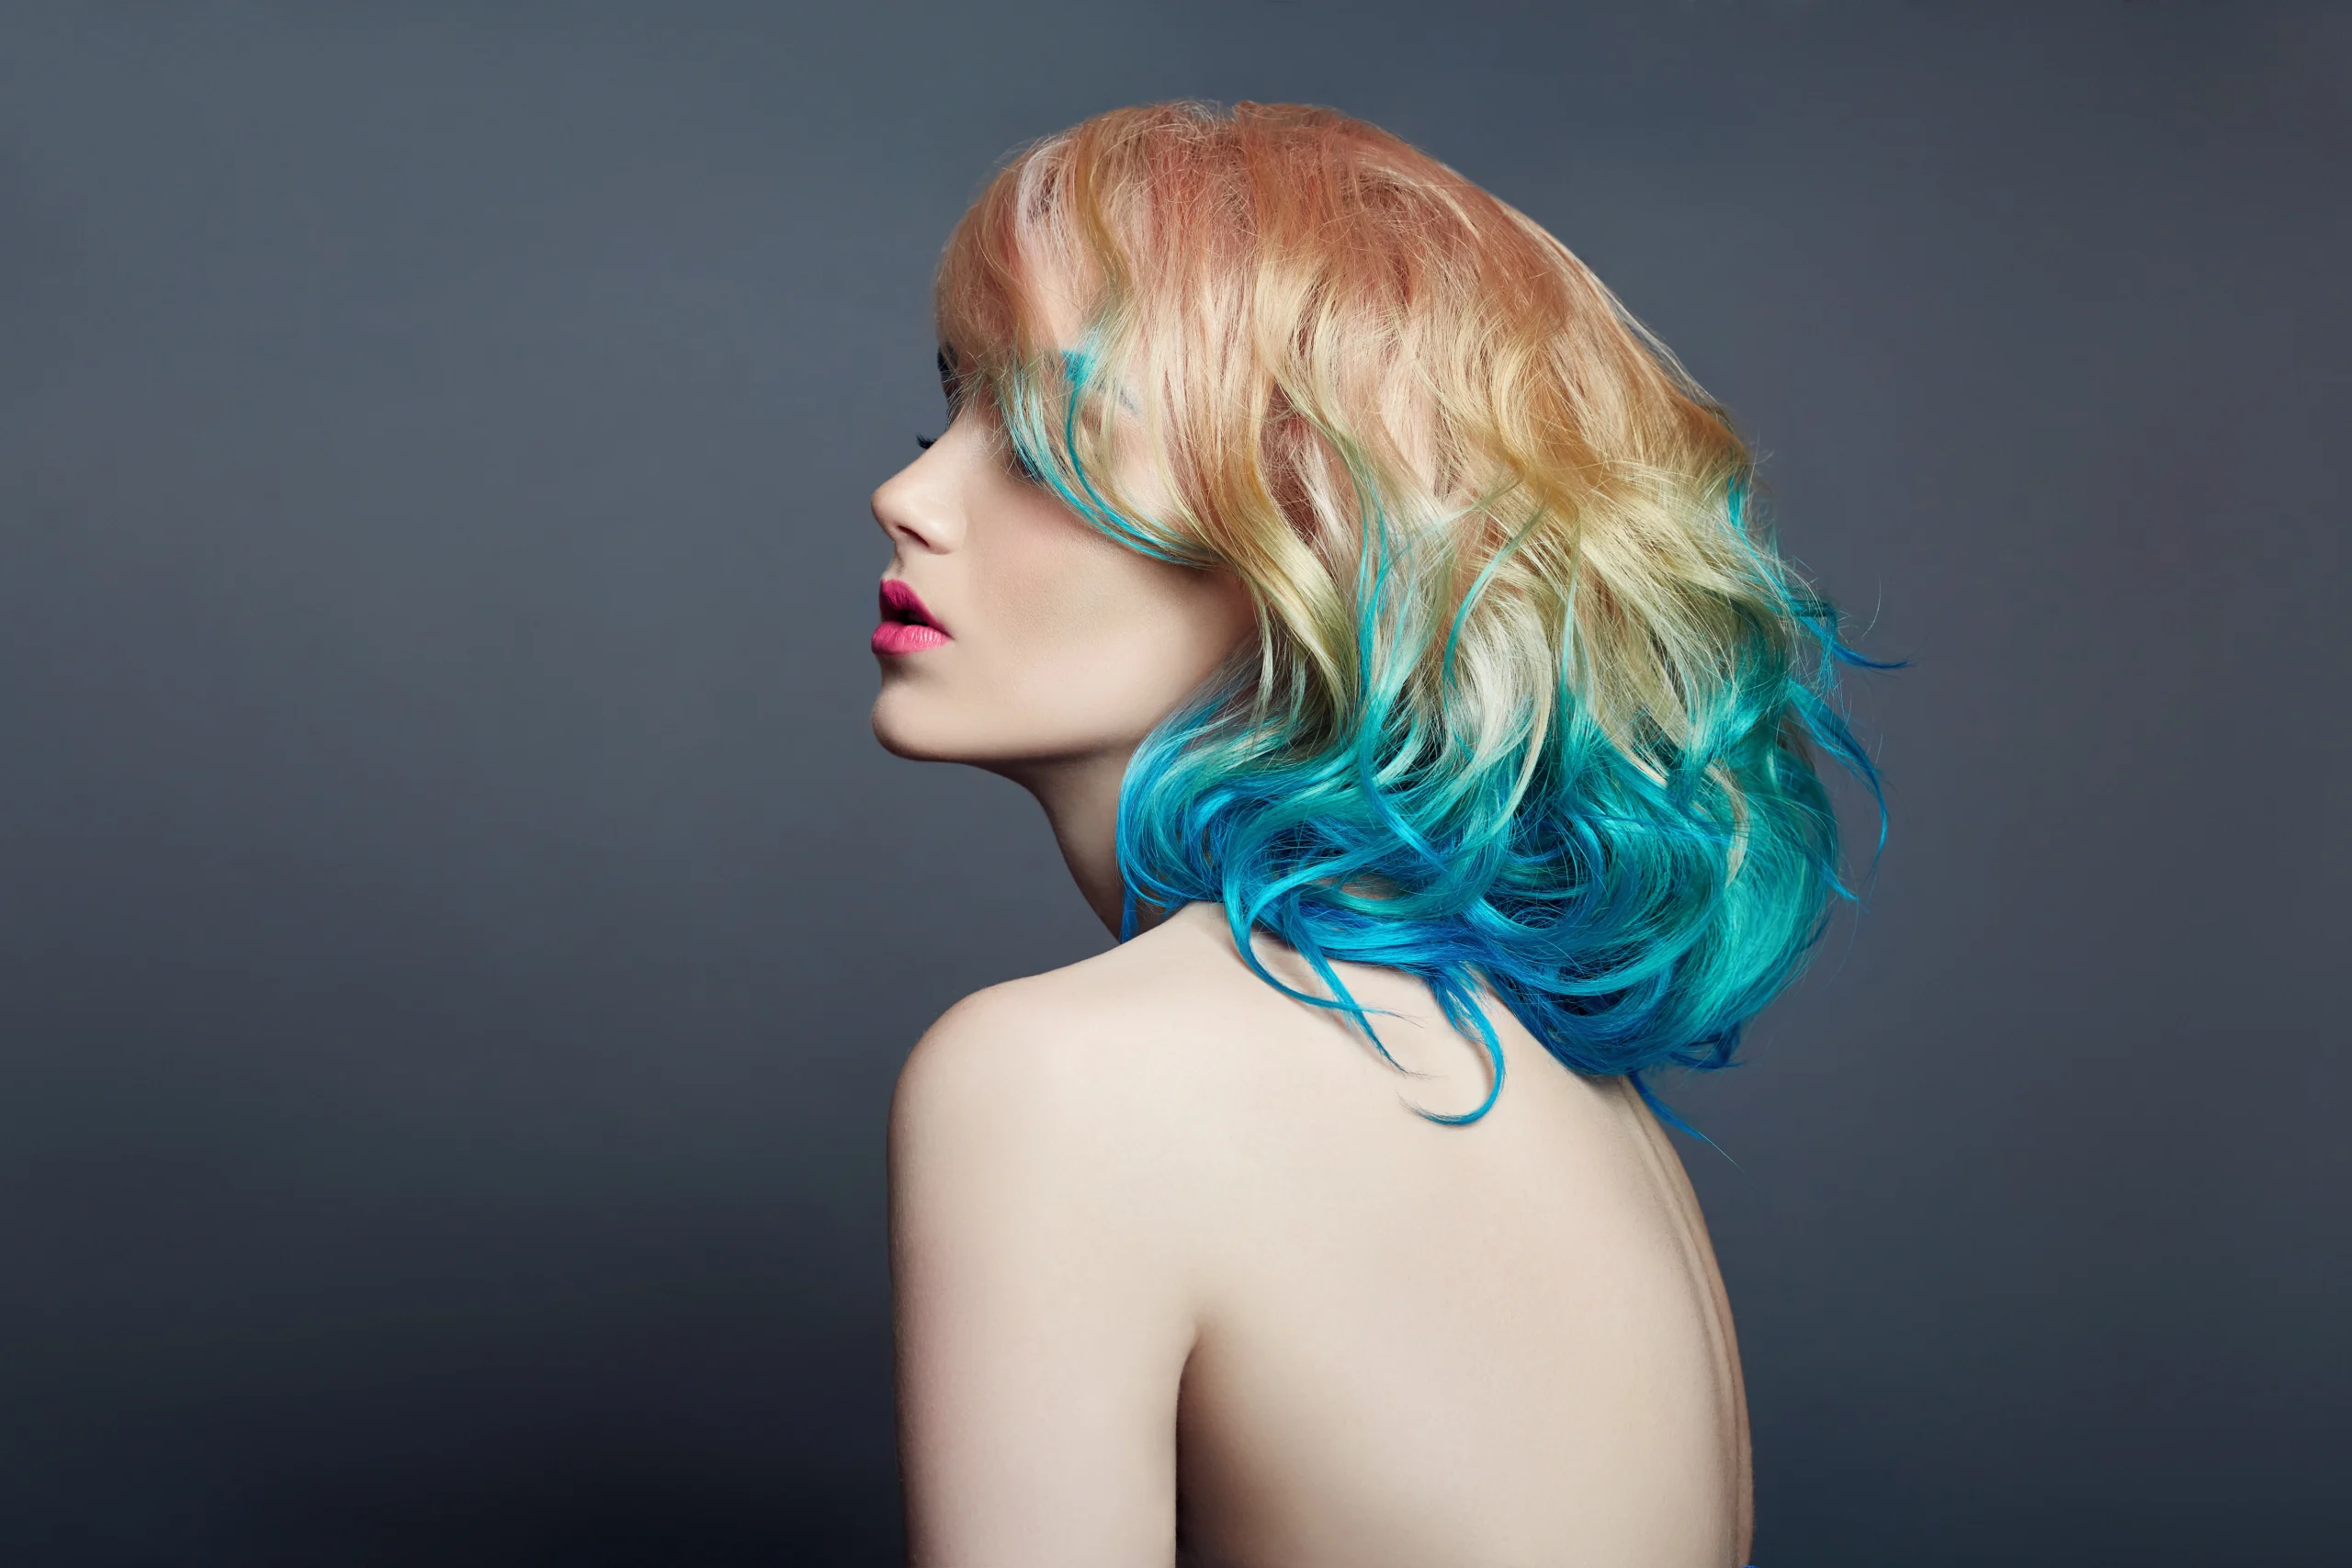 hair-color-2-revolutions-salon.webp